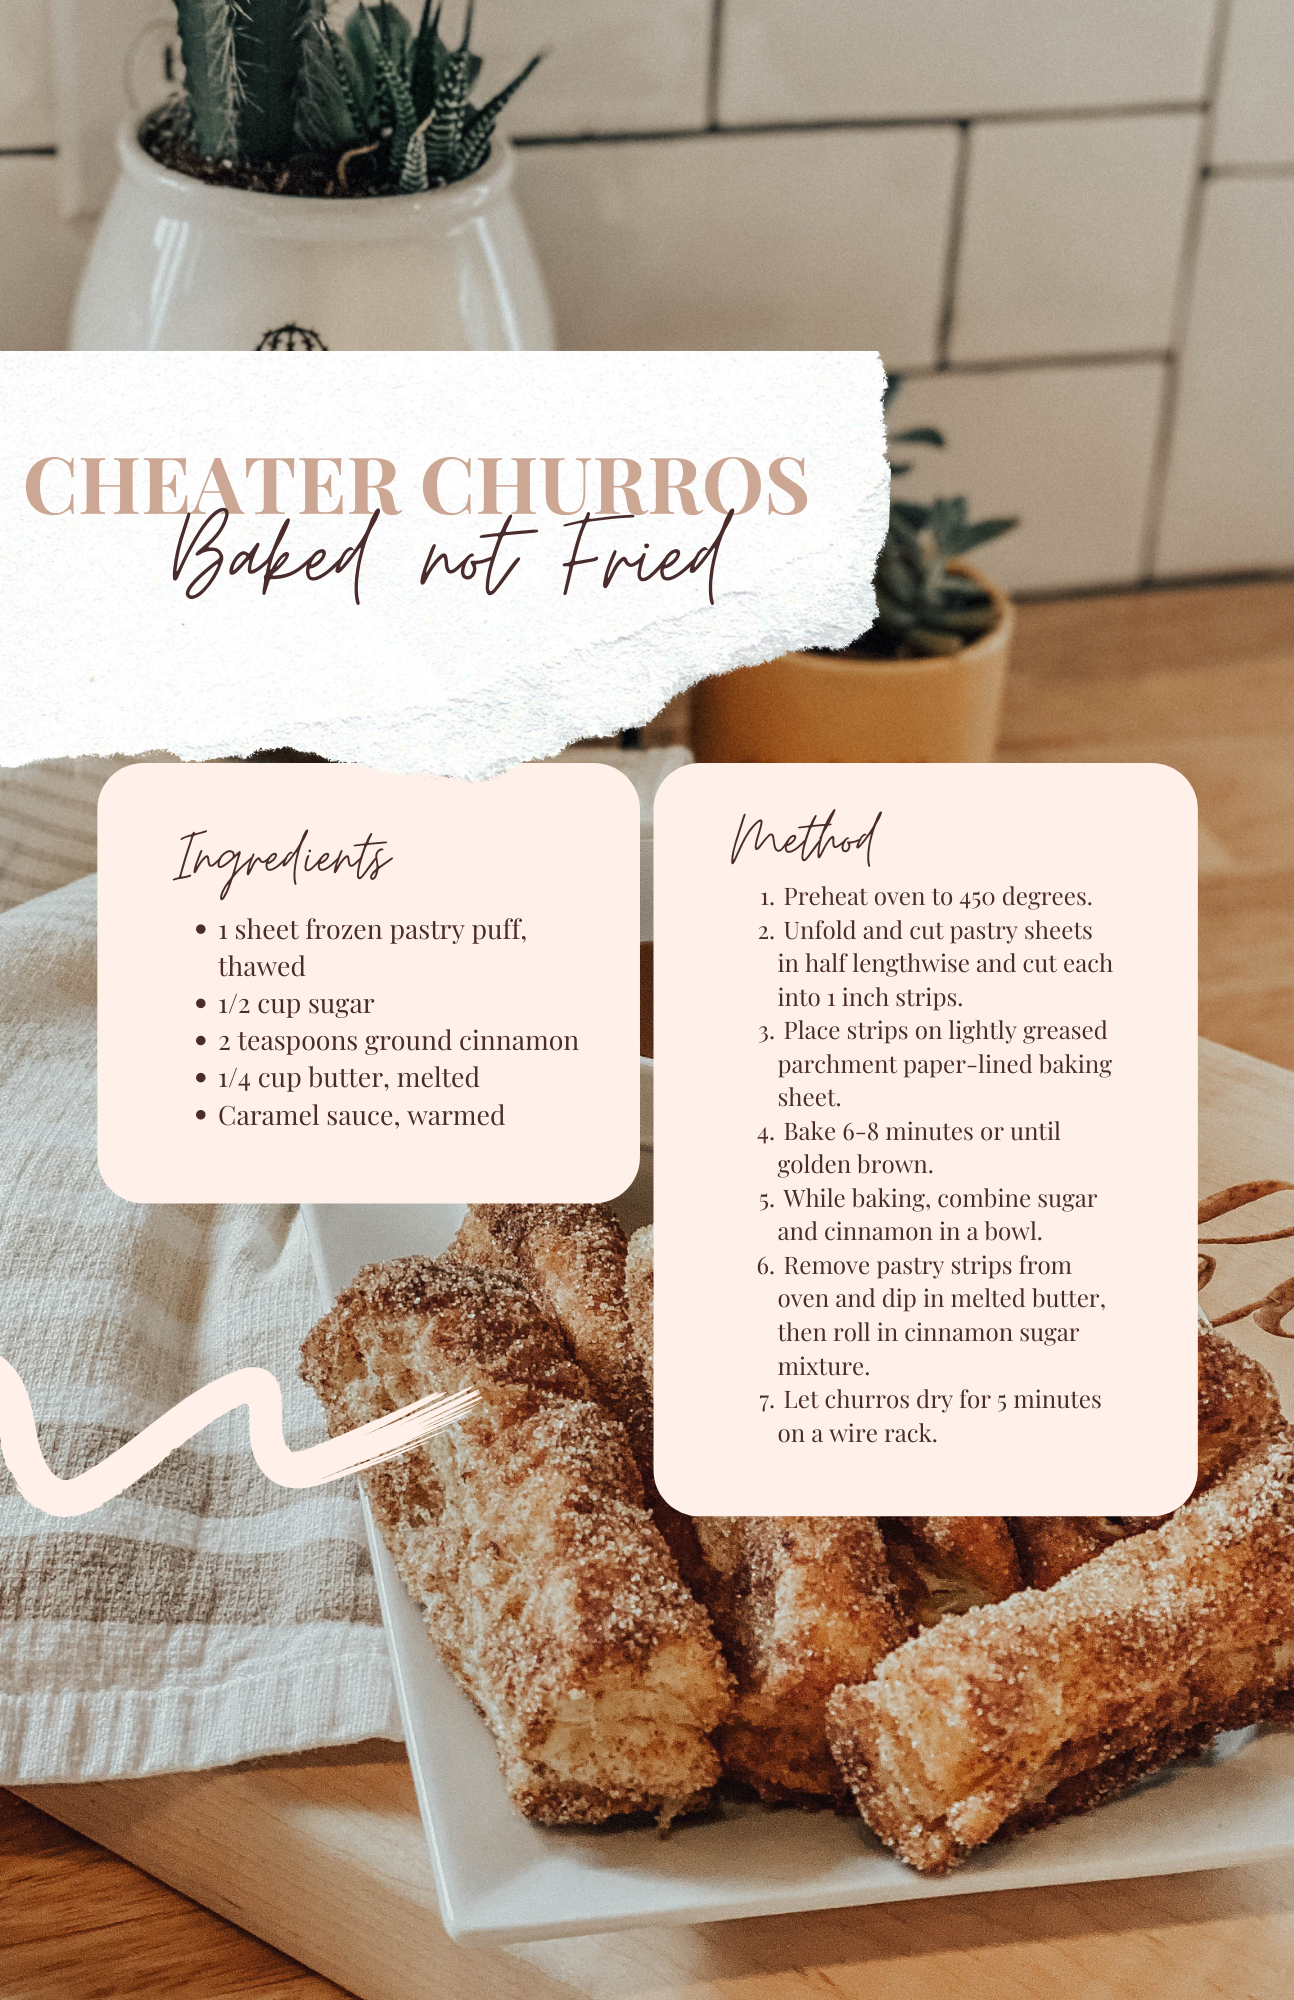 Cheater churros recipe